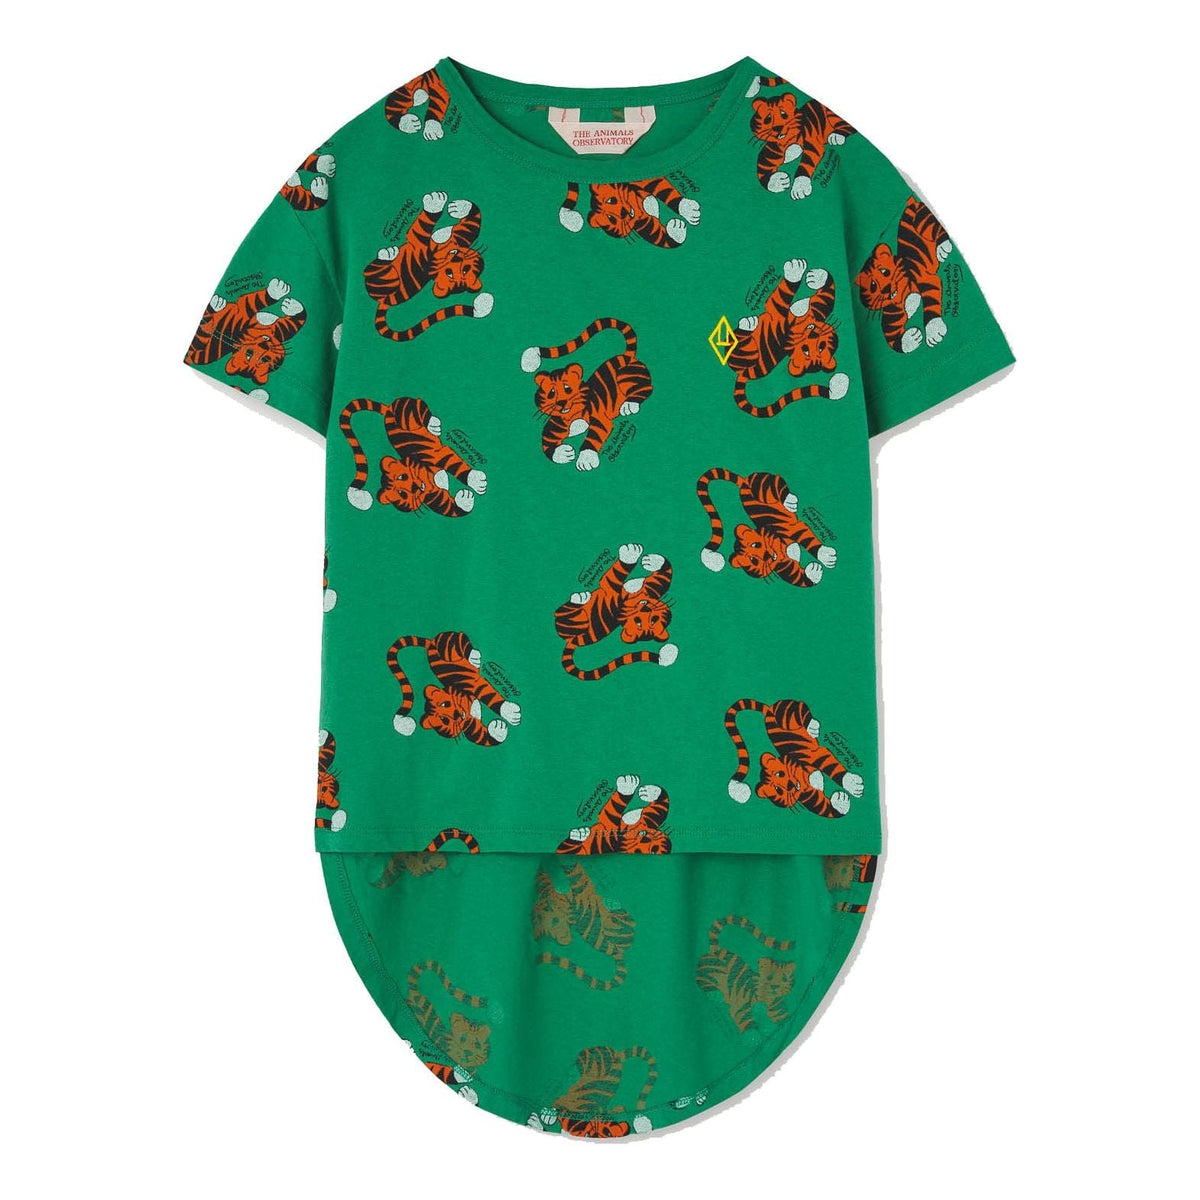 Hare Kids T-Shirt Green